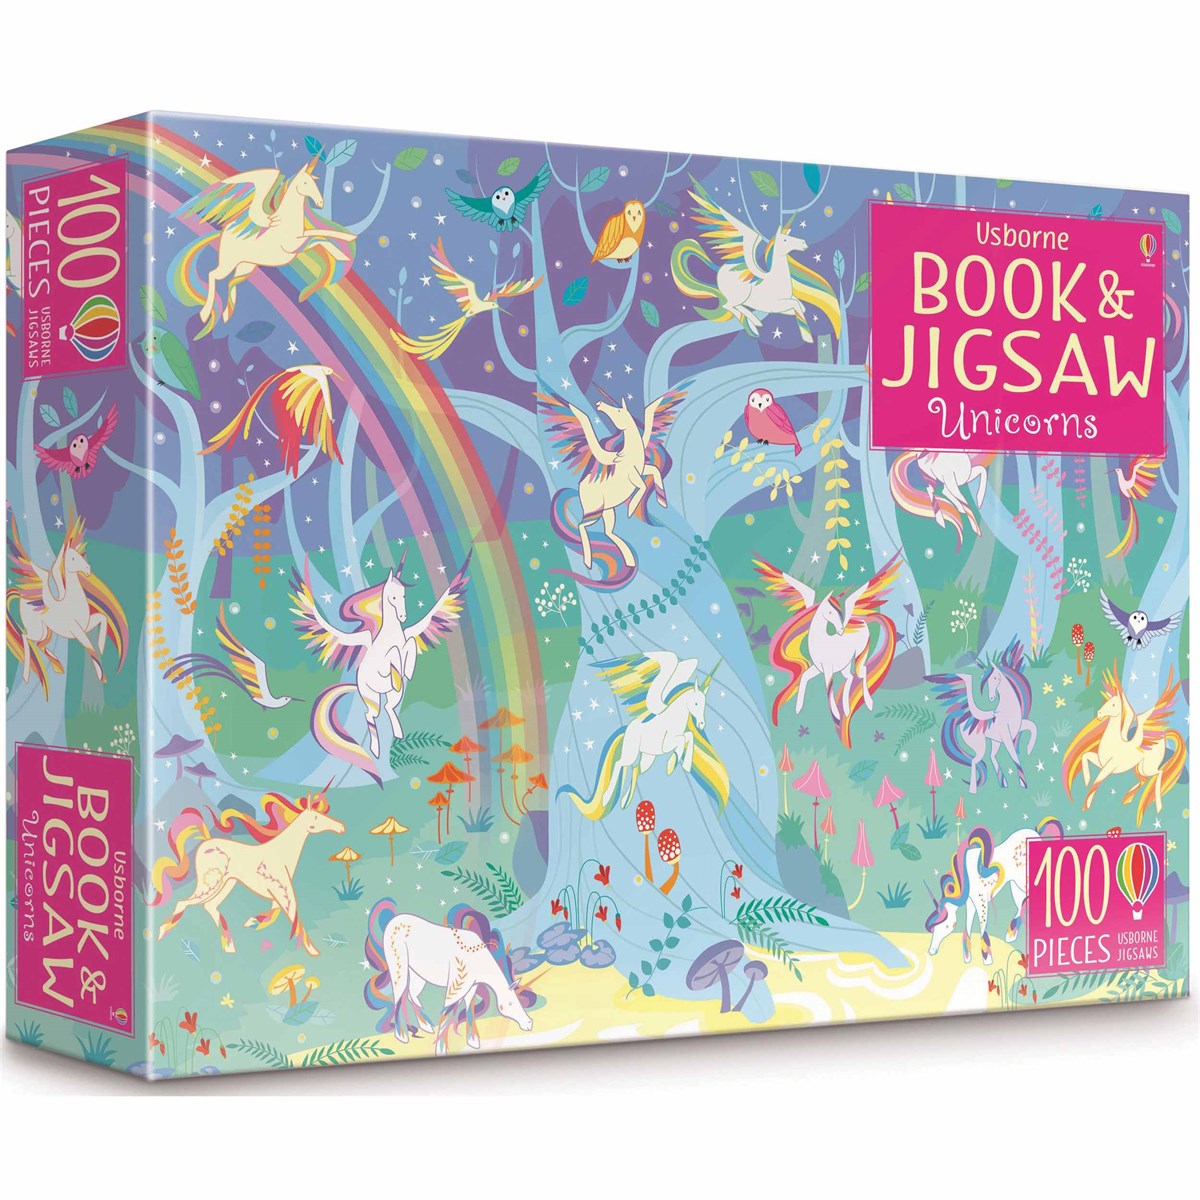 Usborne, Unicorn Book & Jigsaw